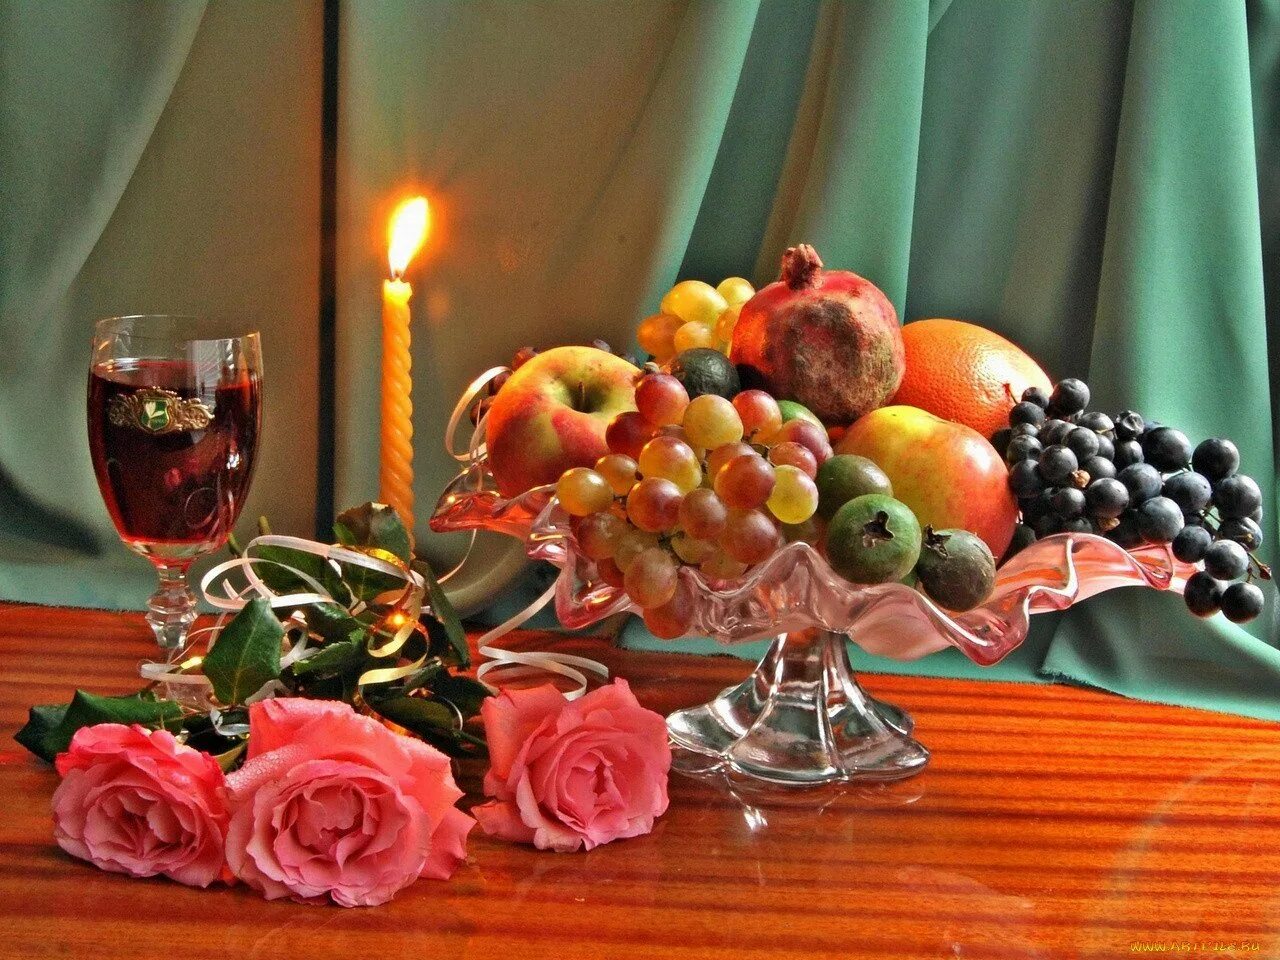 Натюрморт добрый вечер. Натюрморт с вином и фруктами. Фрукты в вазе на столе. Натюрморт с фруктами вином и свечами. Картинки добрый вечер сладкий